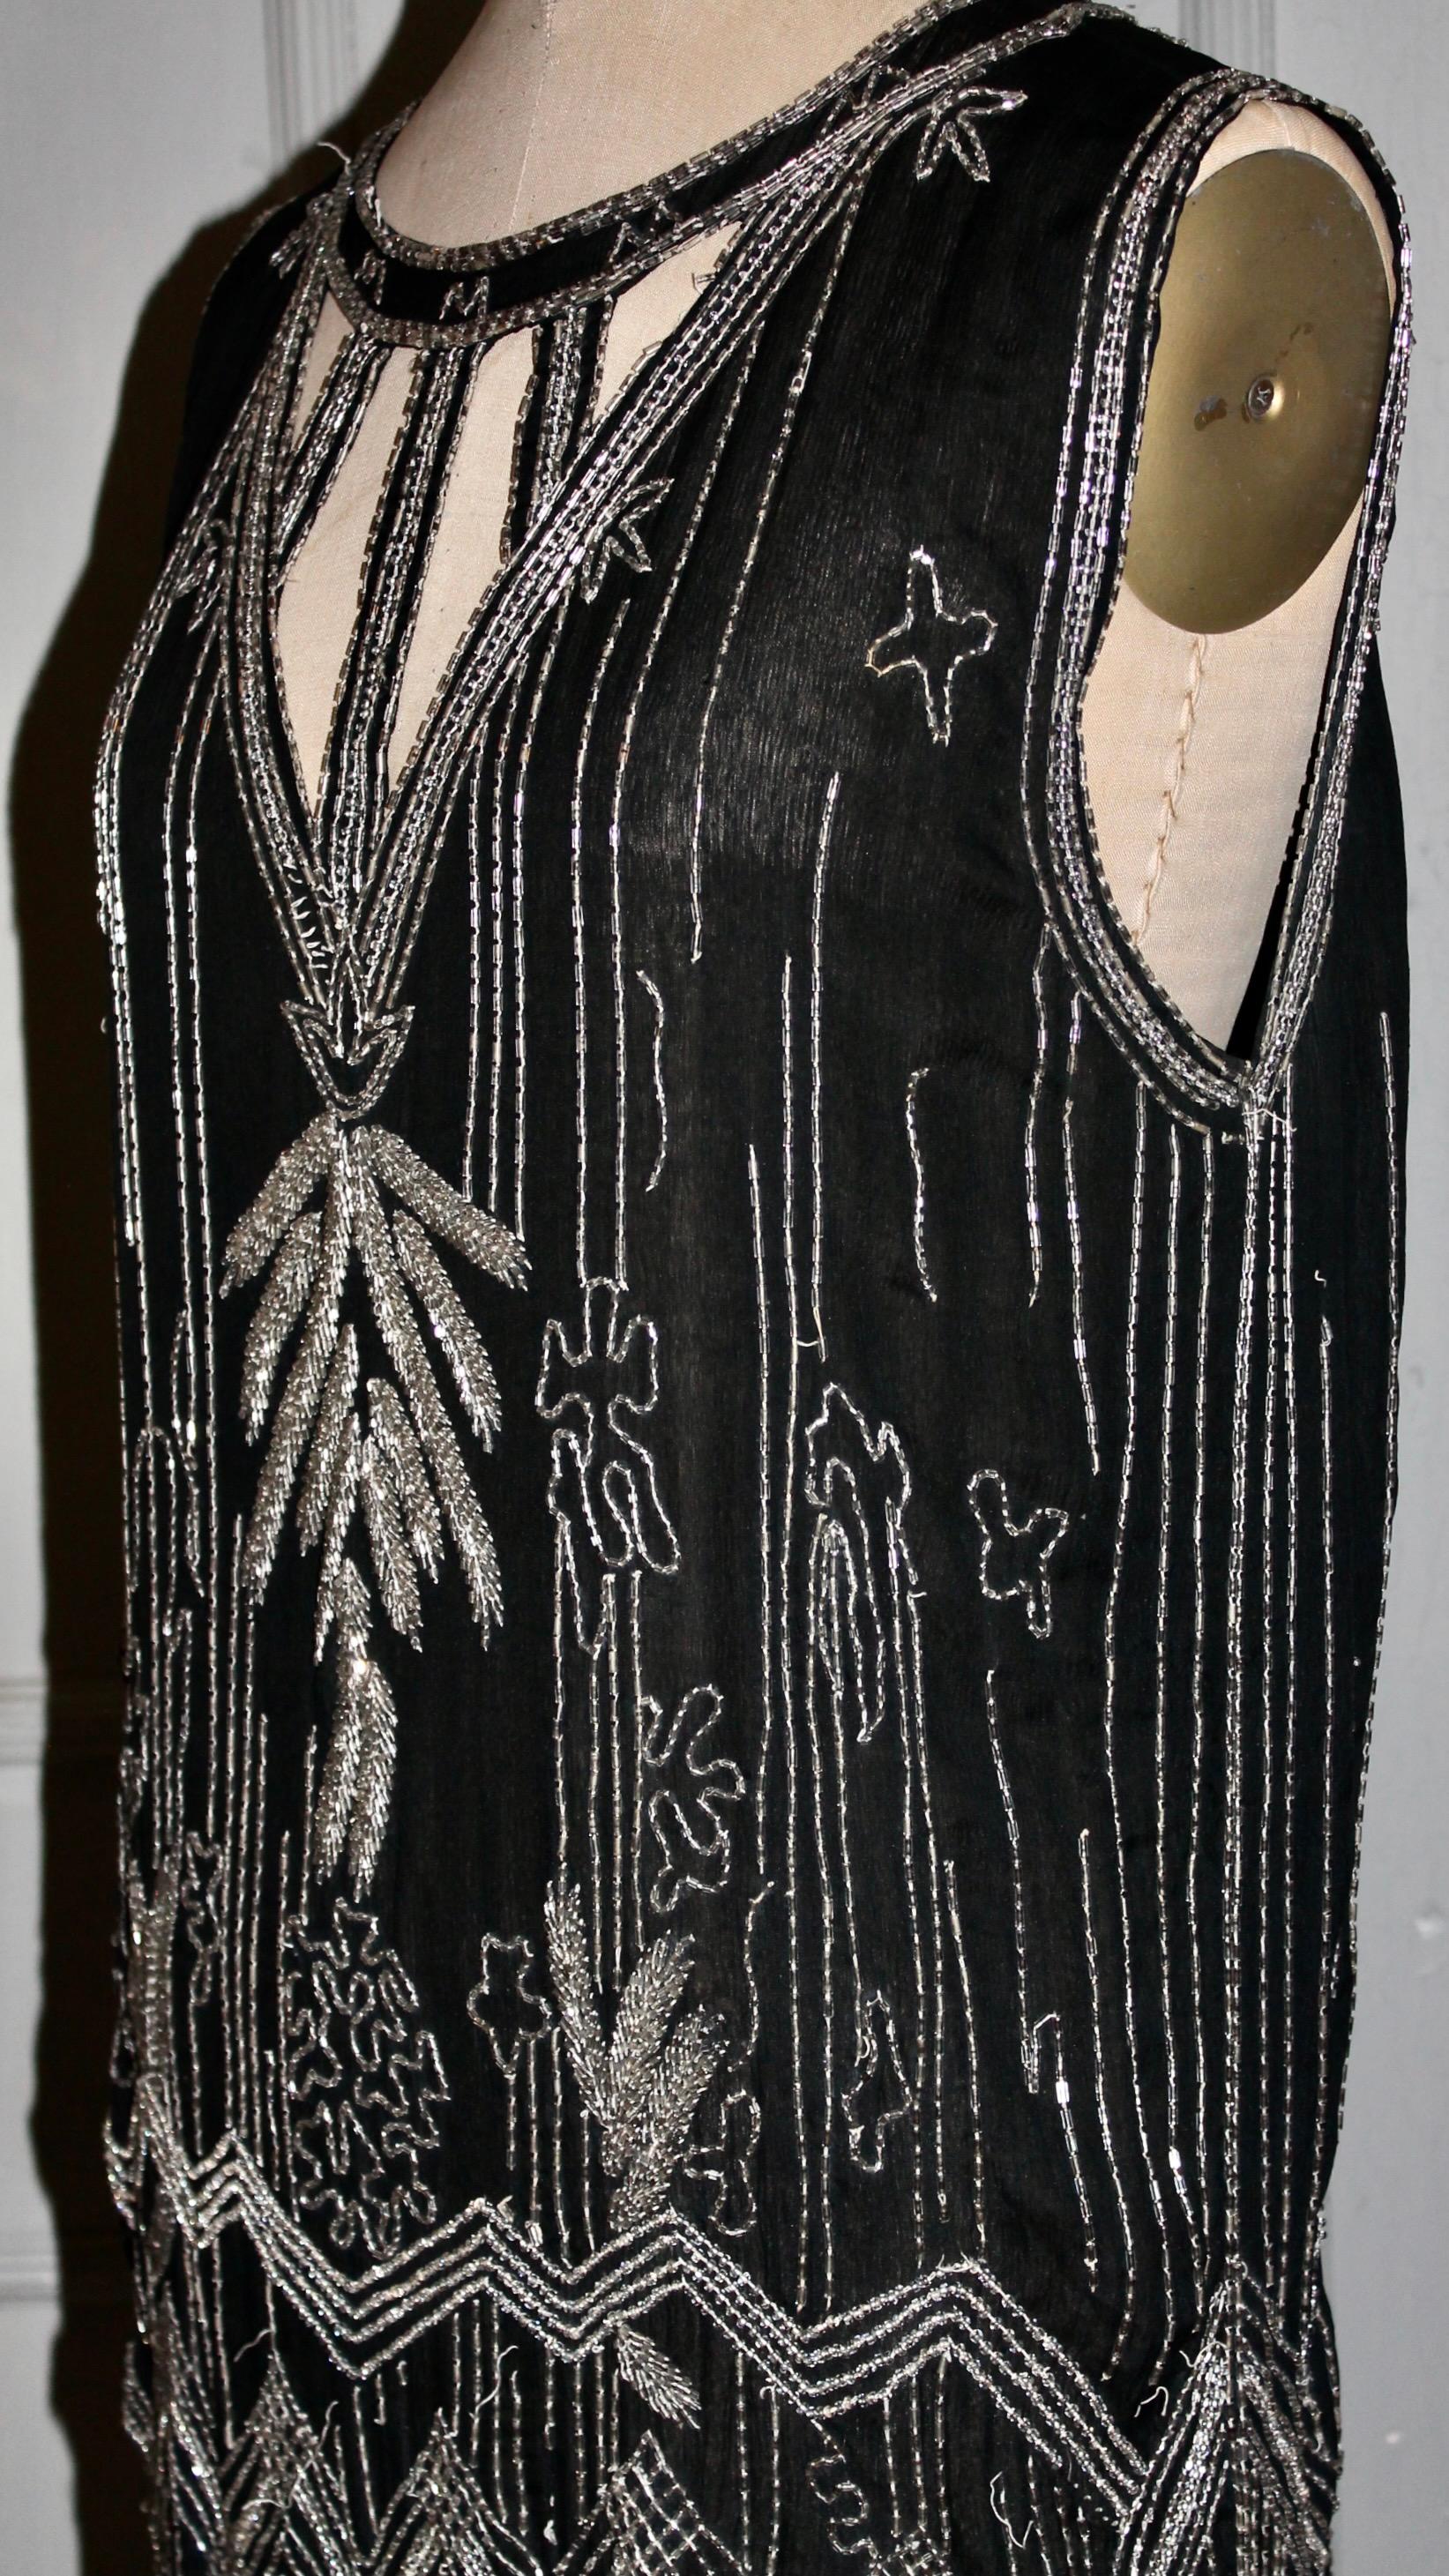 Biete ein außergewöhnliches Art Deco 1920's Couture Schwarzer Seidenkrepp Perlen 'Flapper' Cocktailkleid. Mit extremem Dekobügelsaum.